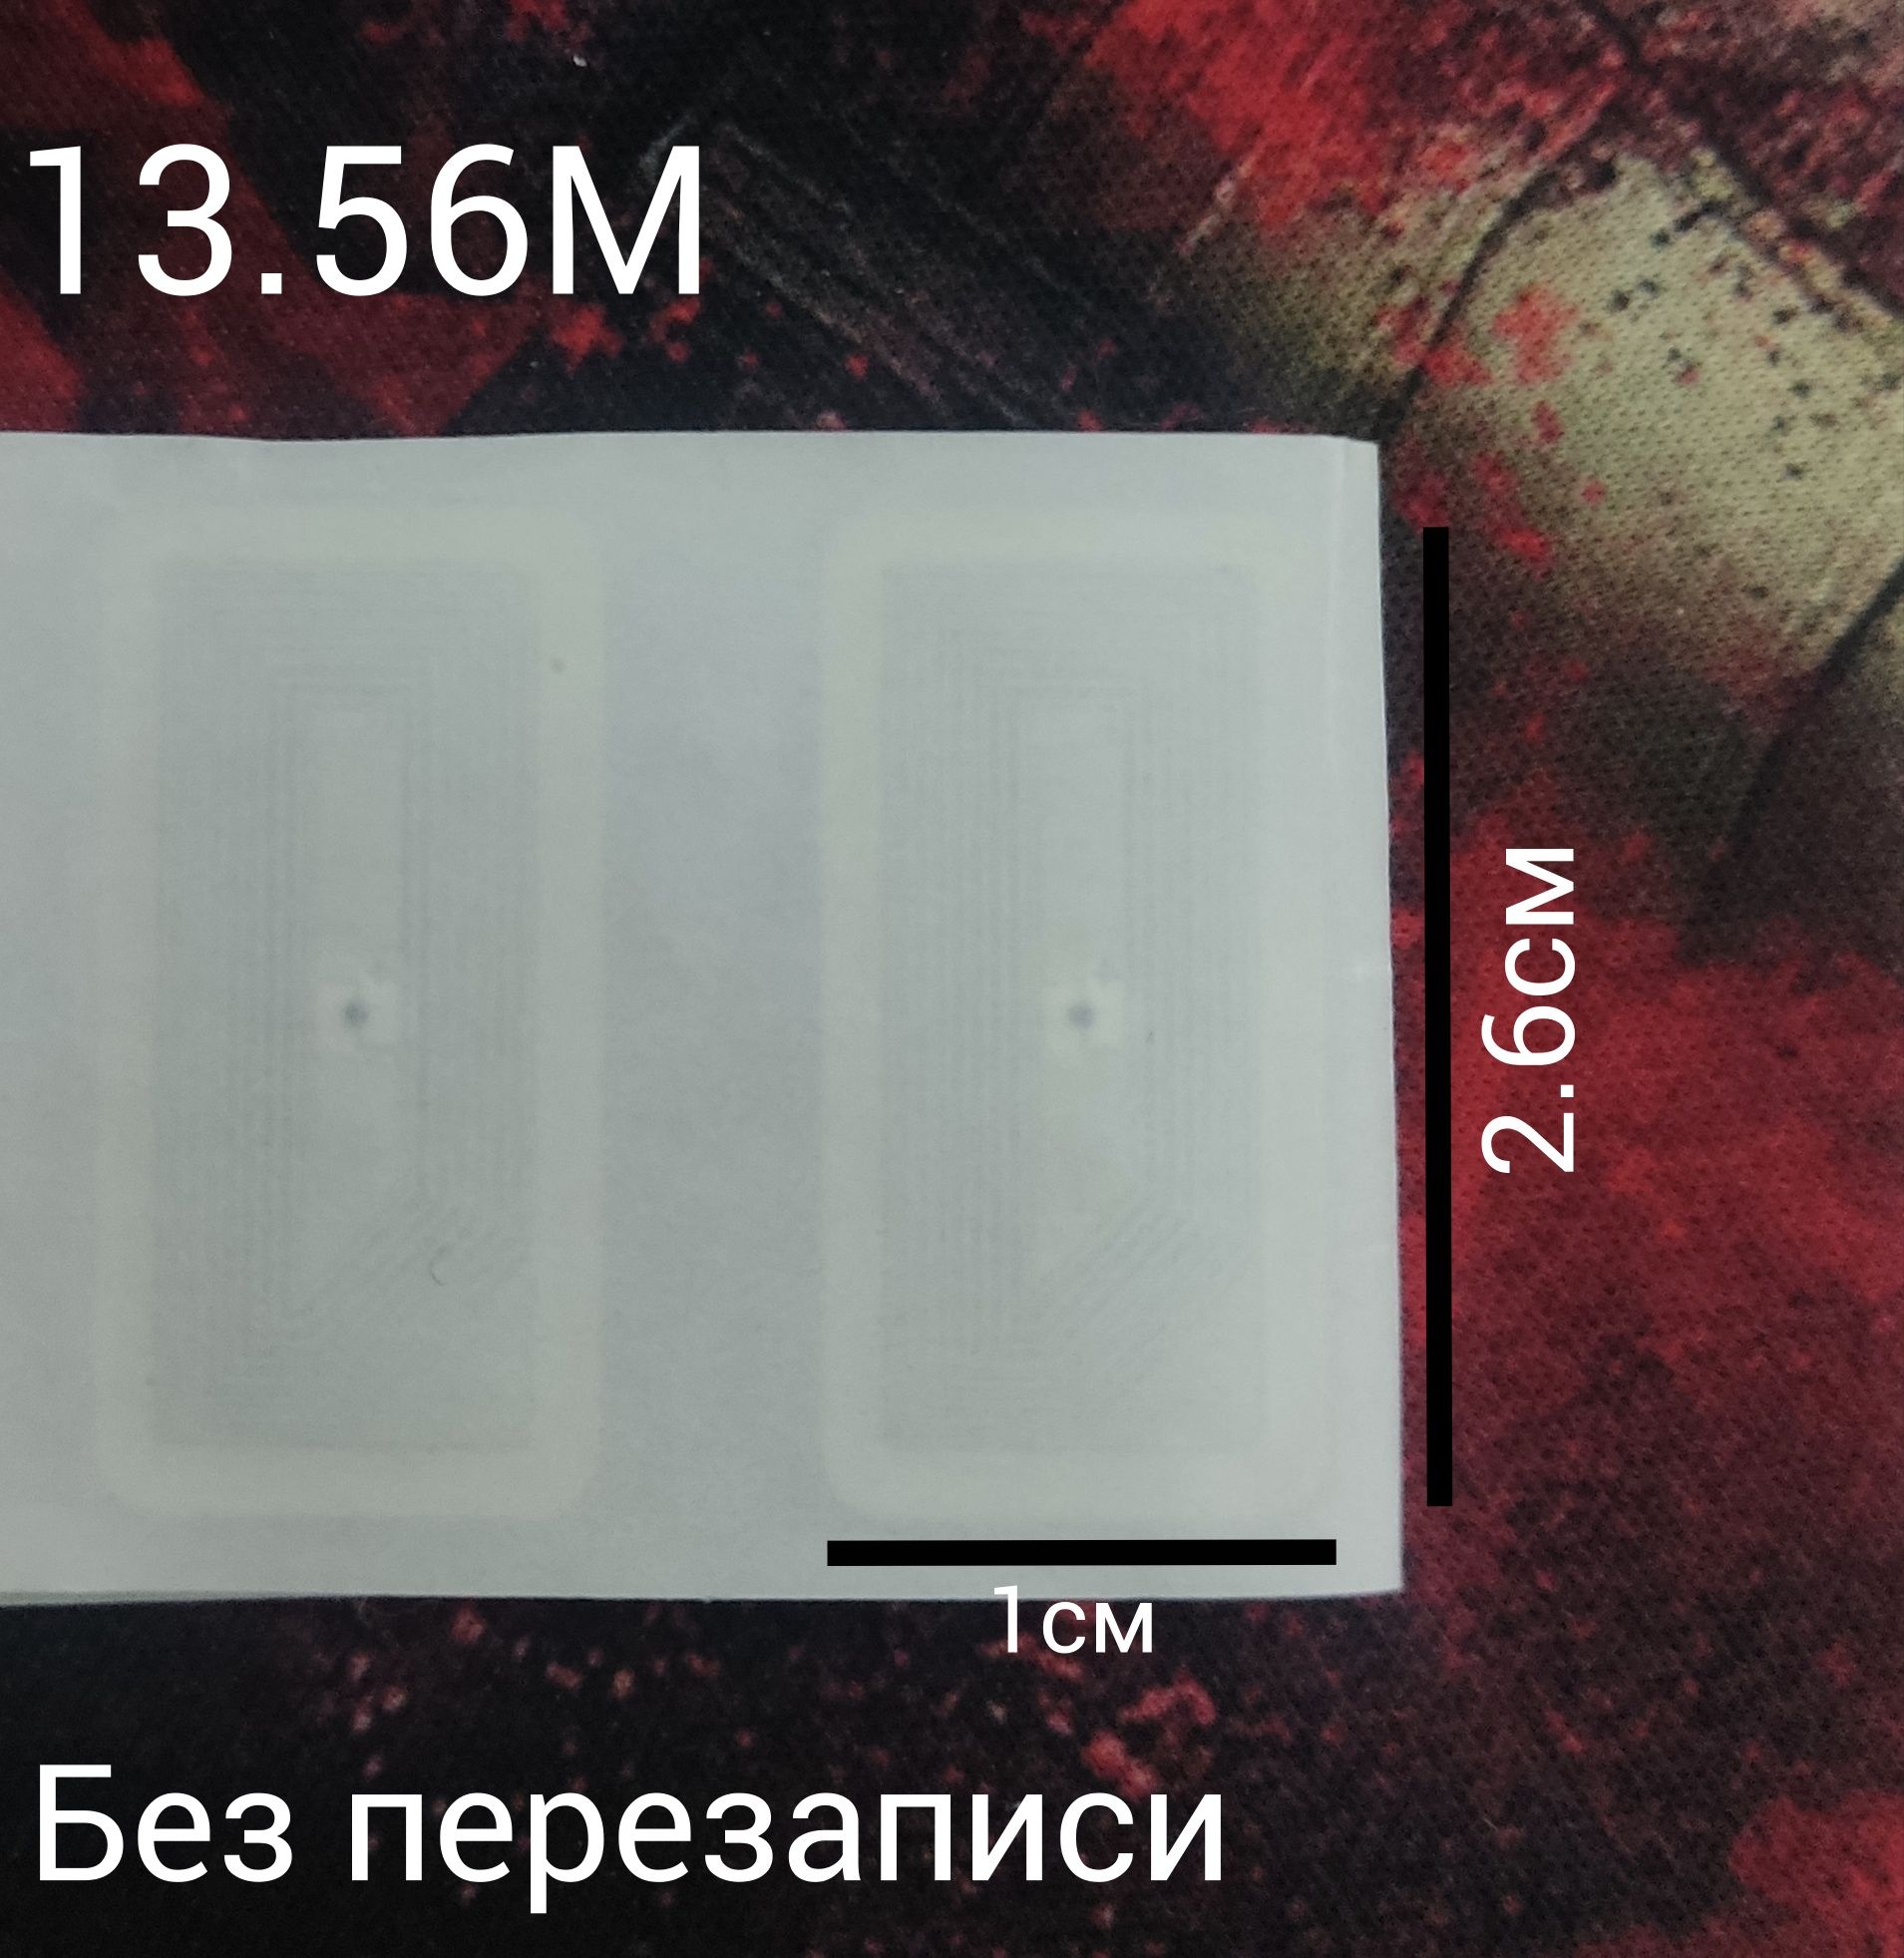 RFID Ключи 13.56М/125К